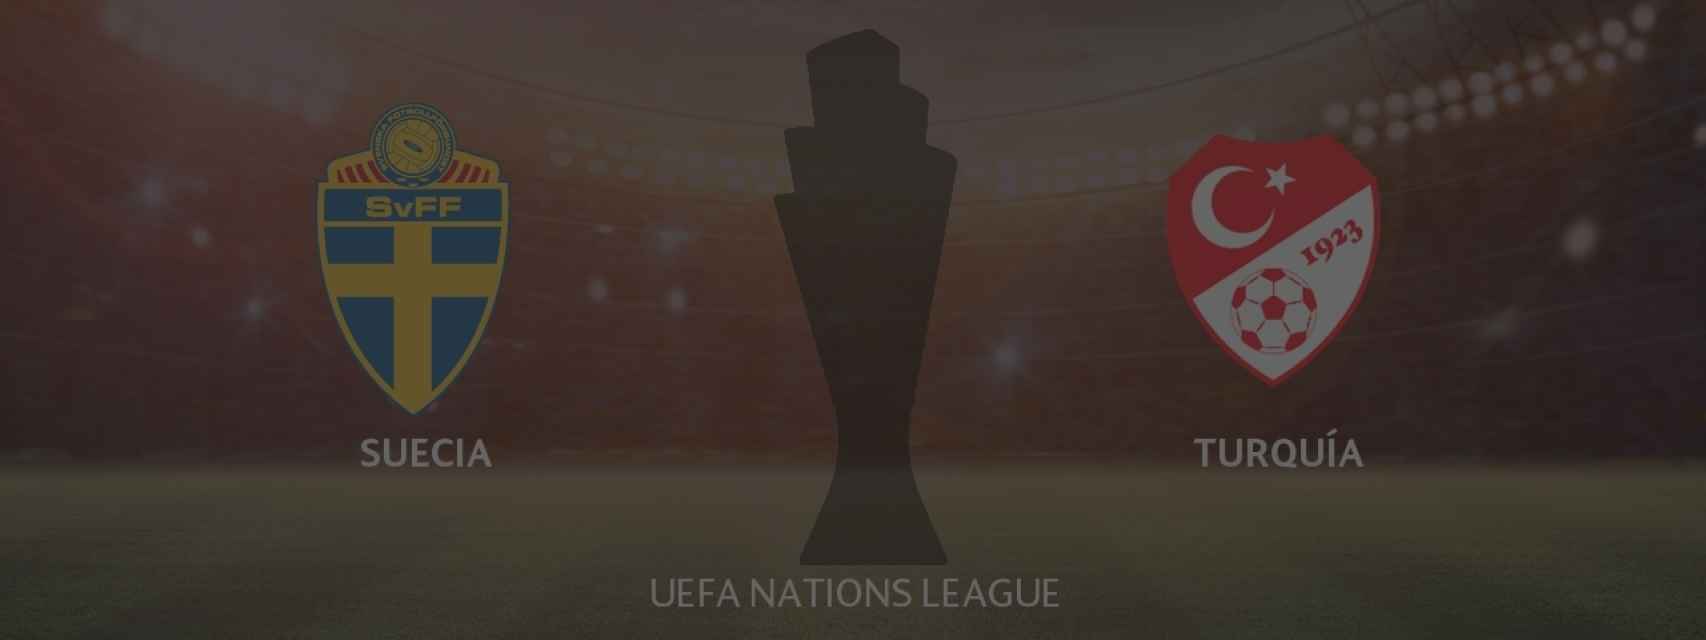 Suecia - Turquía, UEFA Nations League